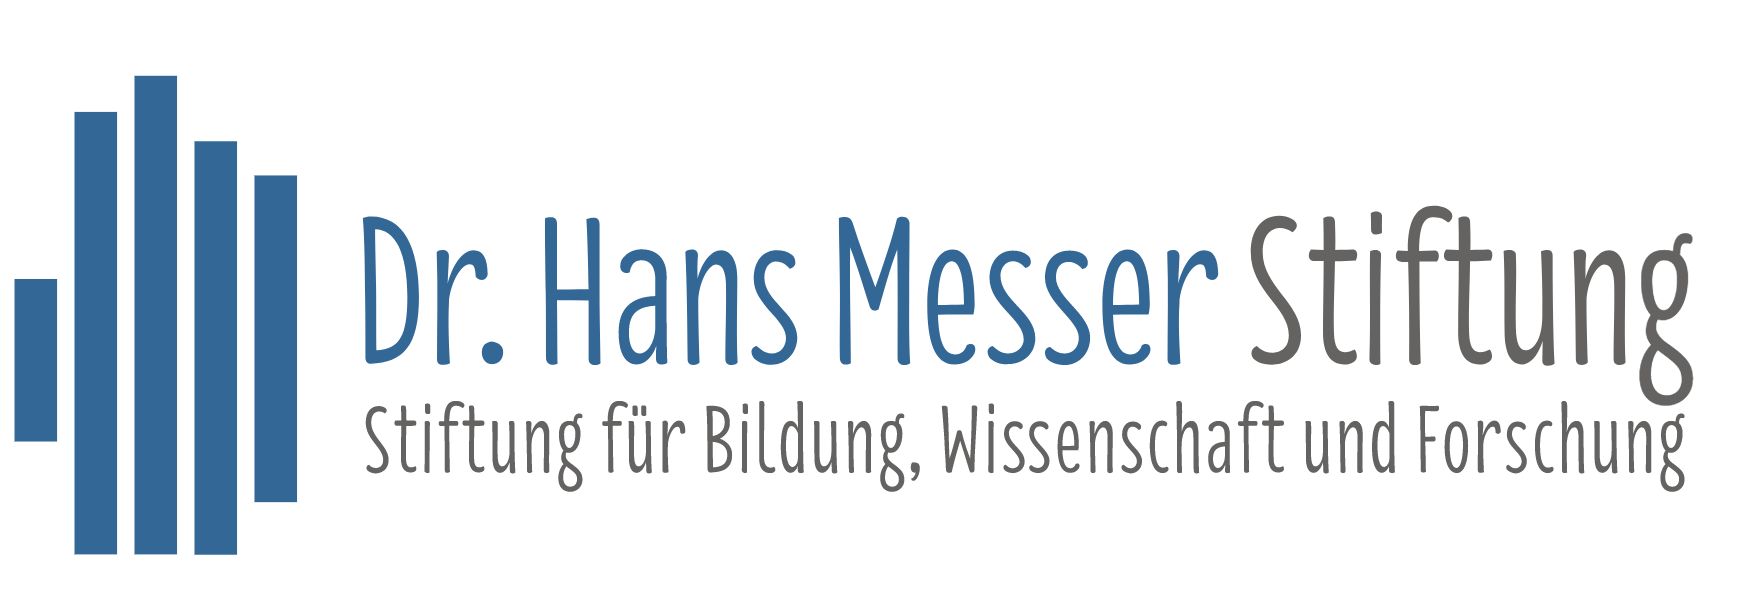 Logo der Dr. Hans Messer Stiftung